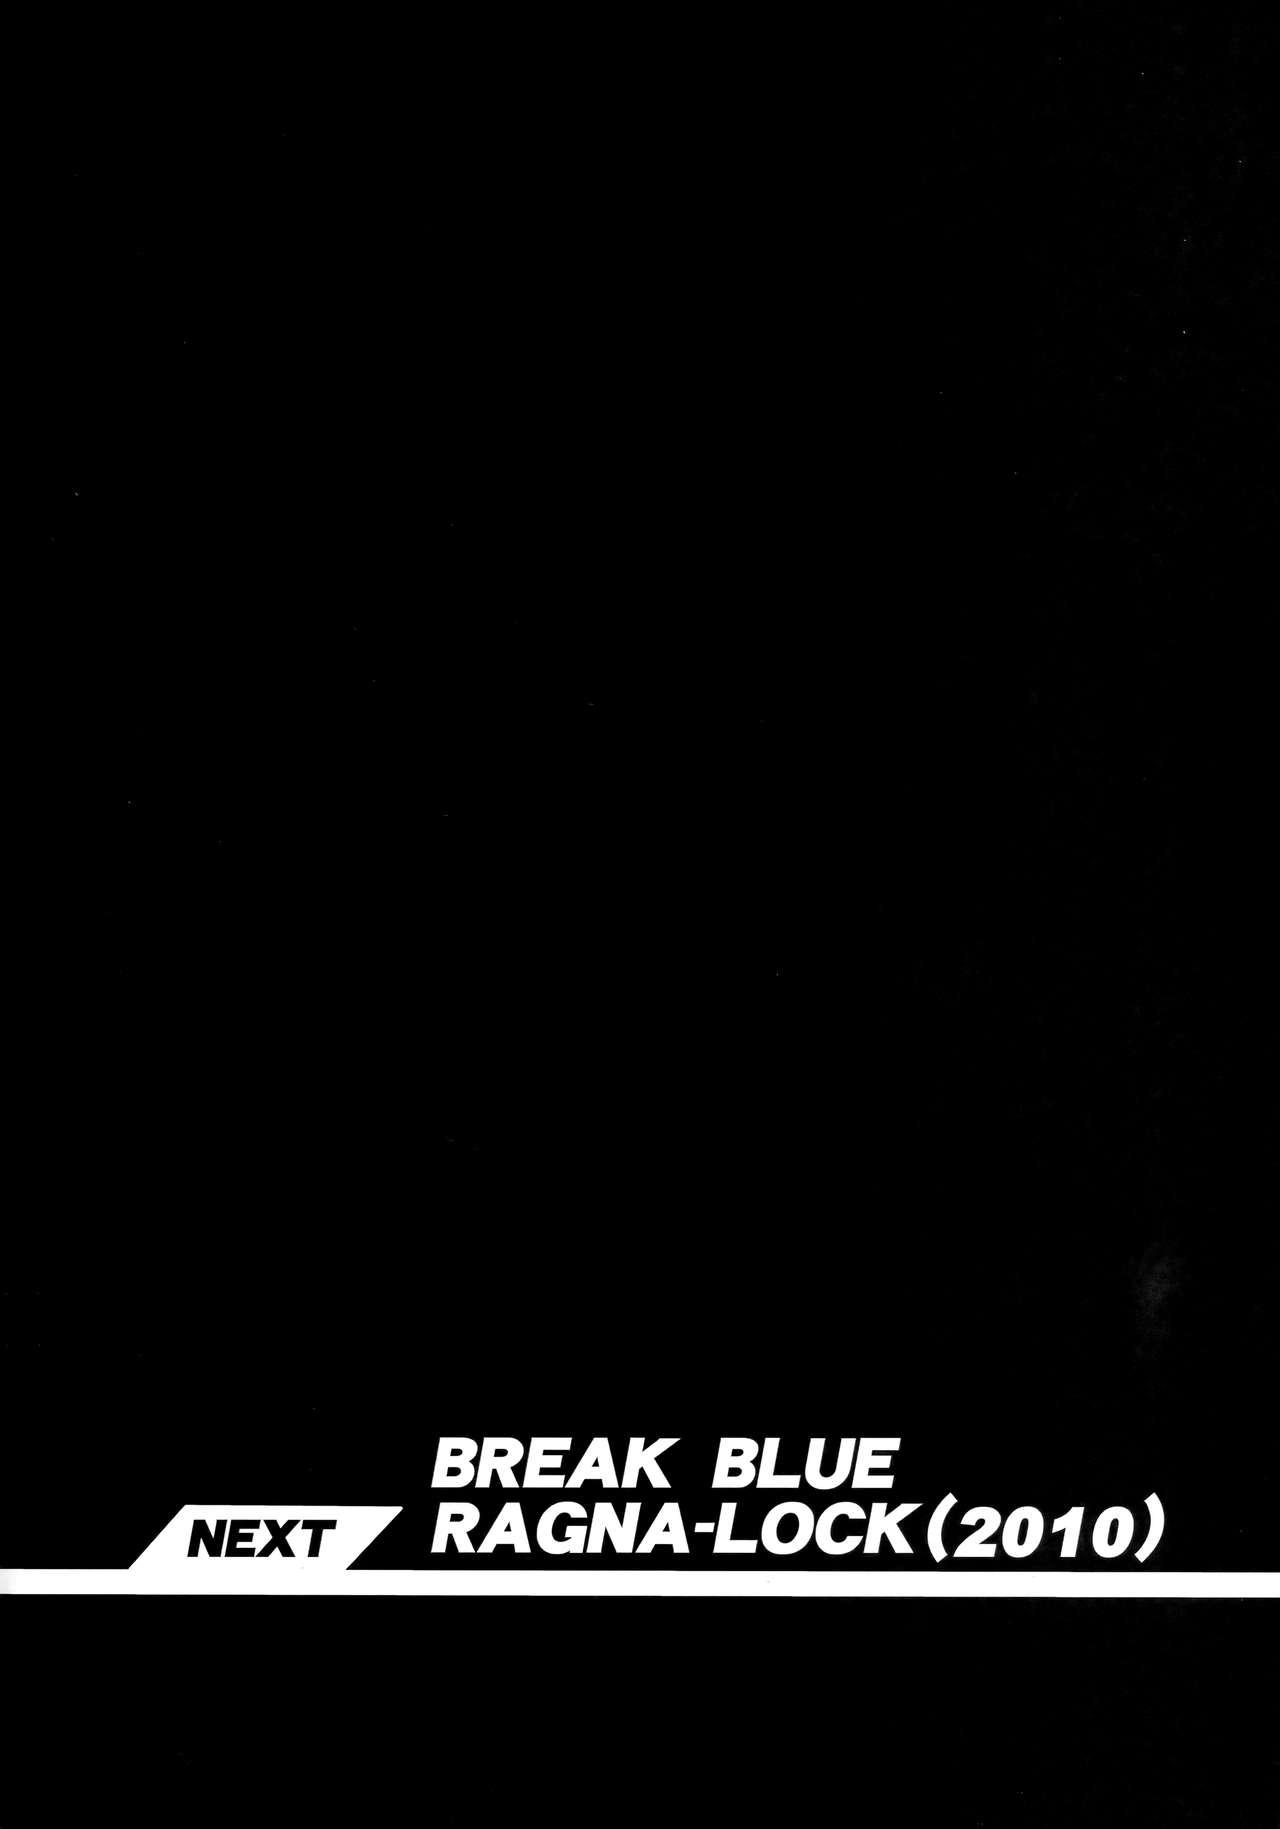 CHRONICLE OF BREAK BLUE 88